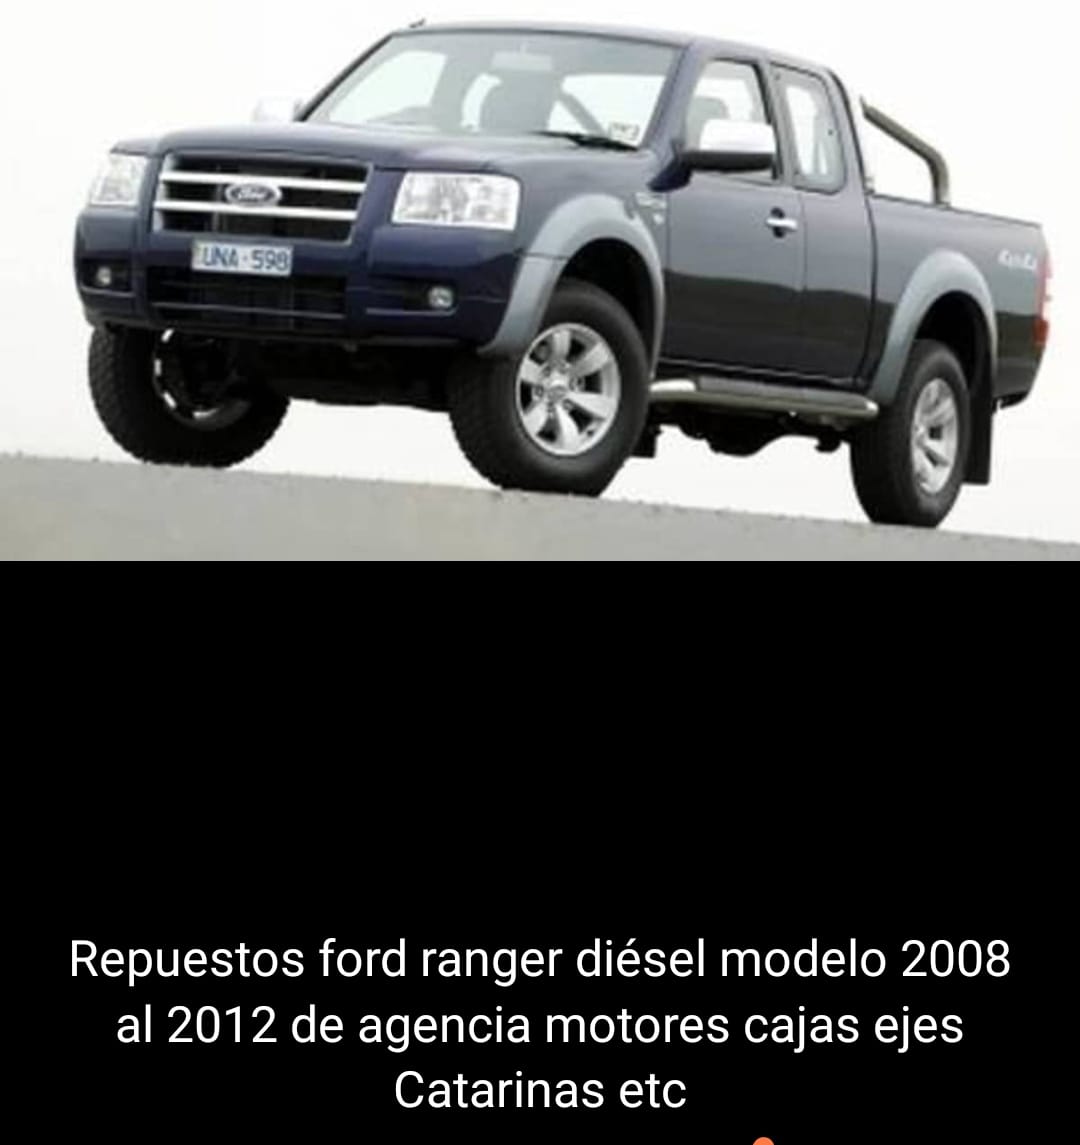 Repuestos Ford Ranger diesel modelo 2008 al 2012 de agencia motores, cajas,ejes catarinas etc